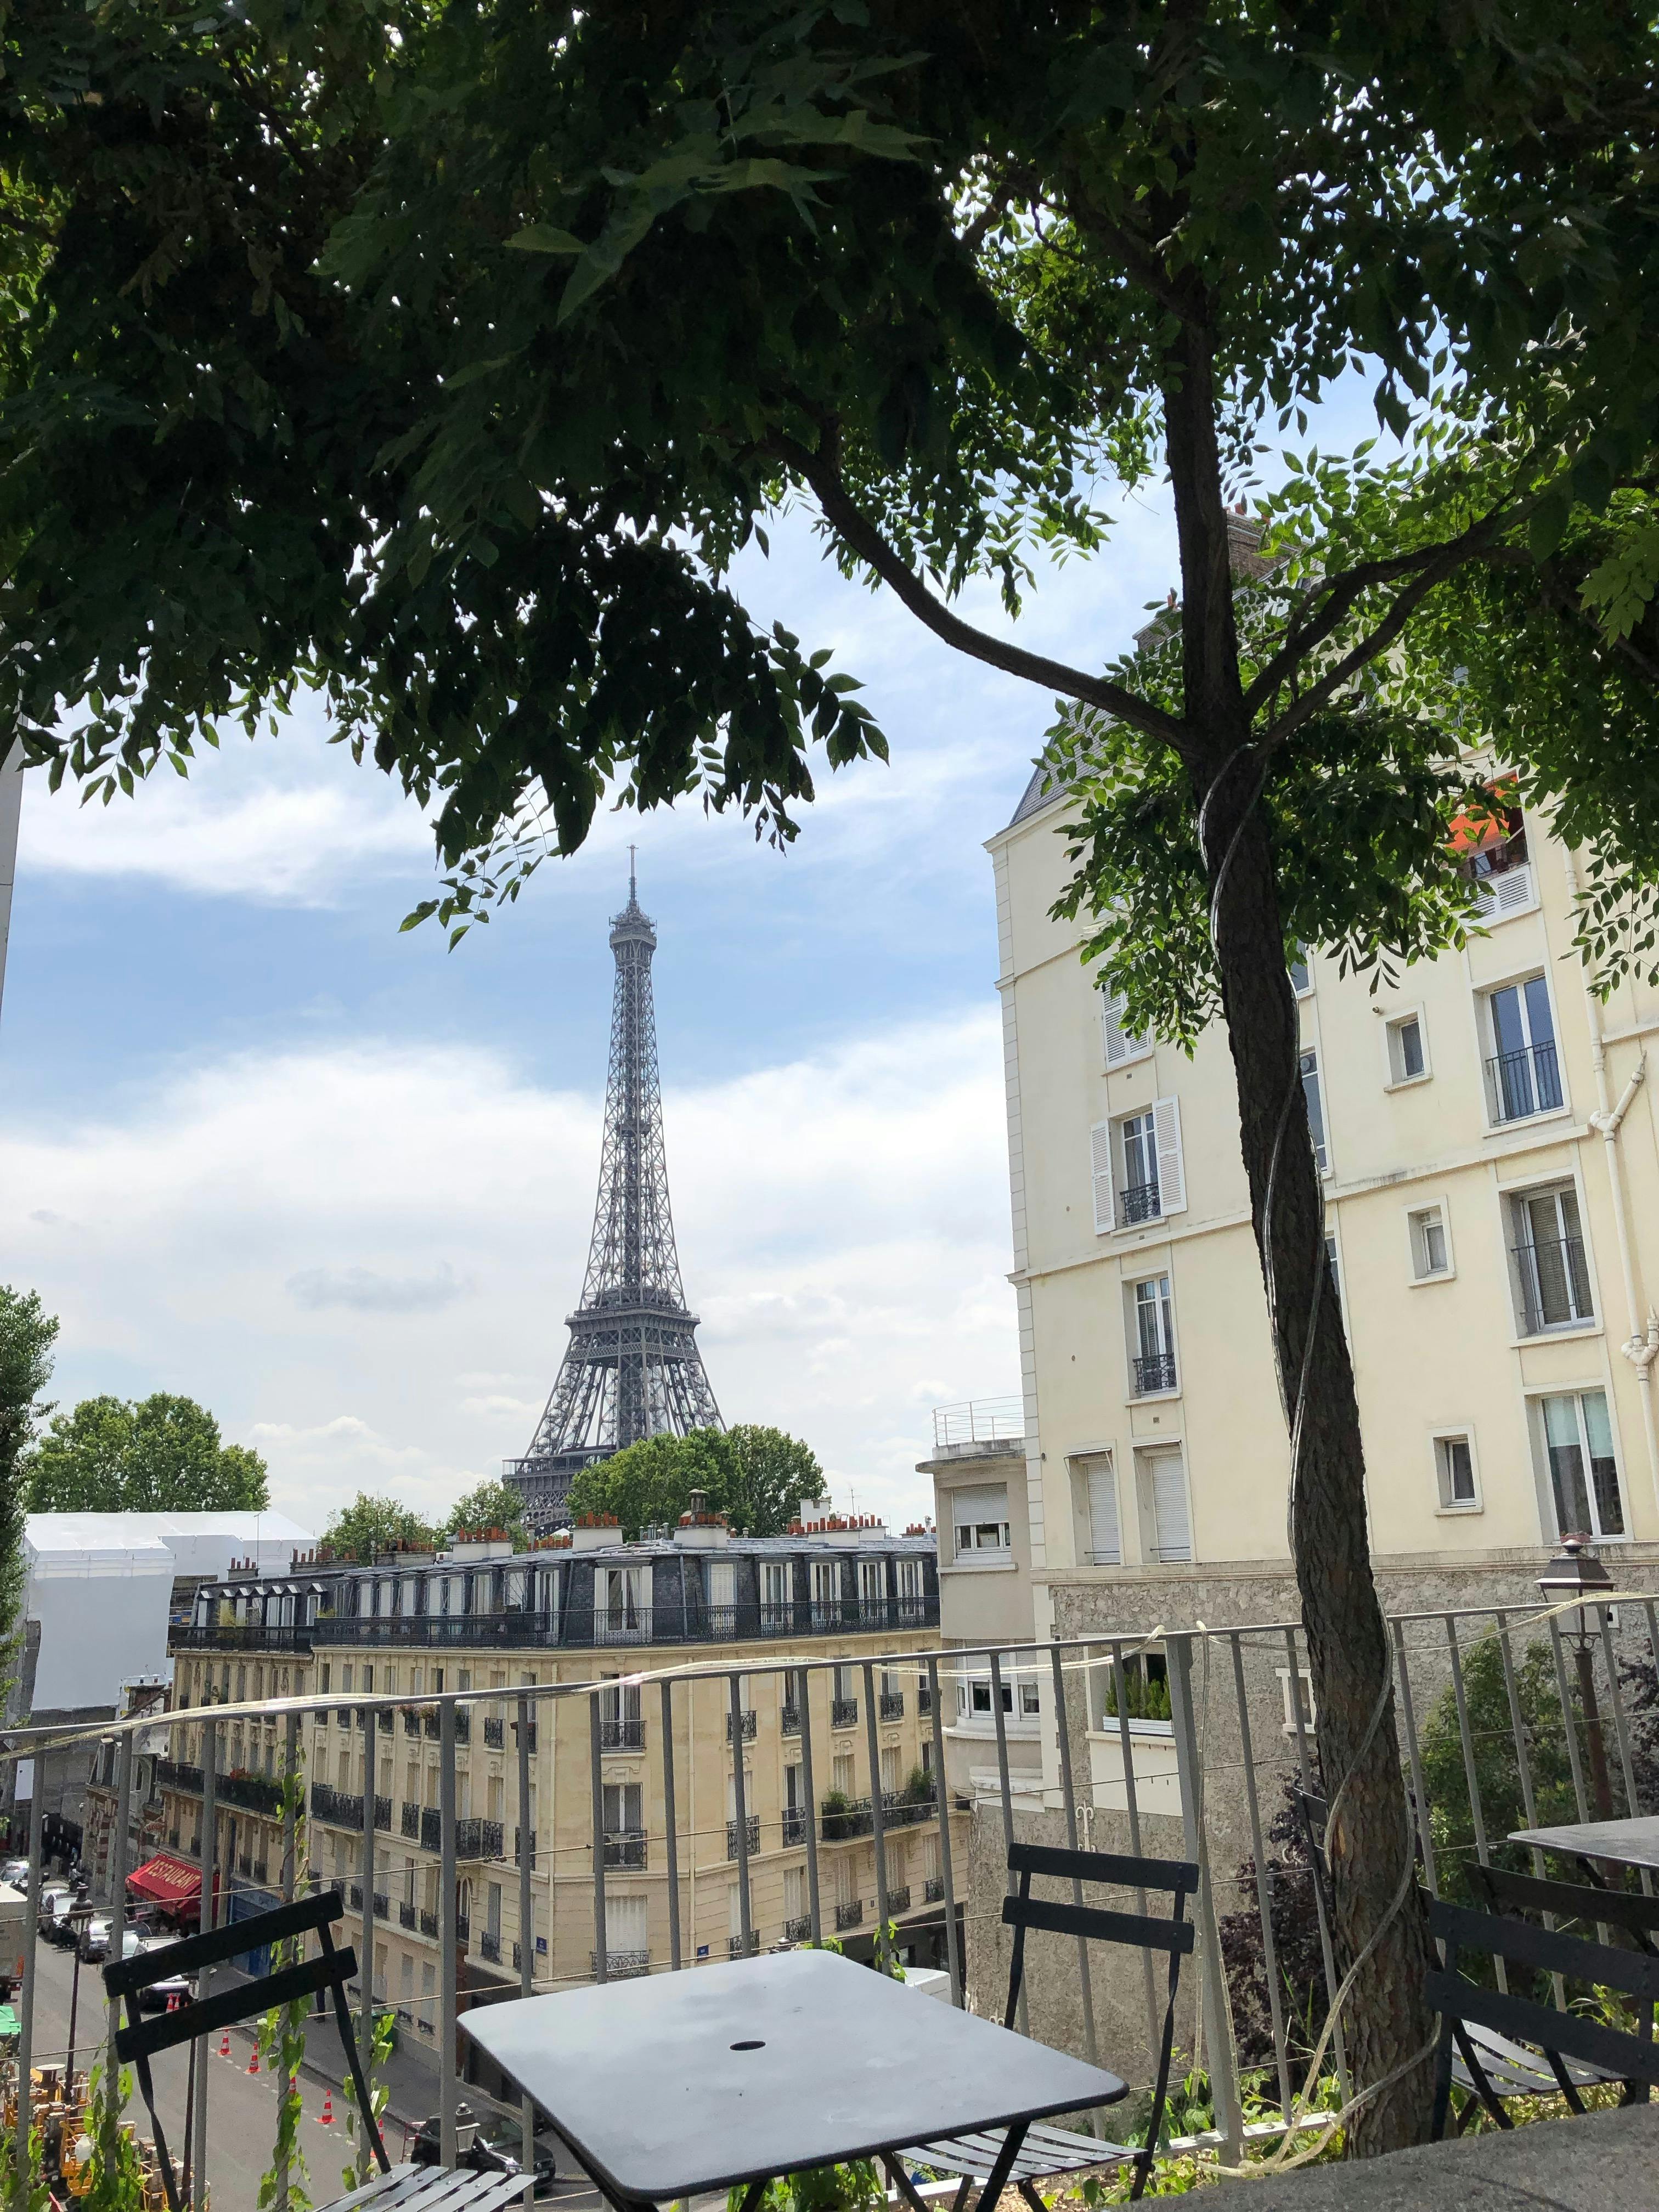 Tour mit französischem Gebäck und Marktverkostung rund um den Eiffelturm